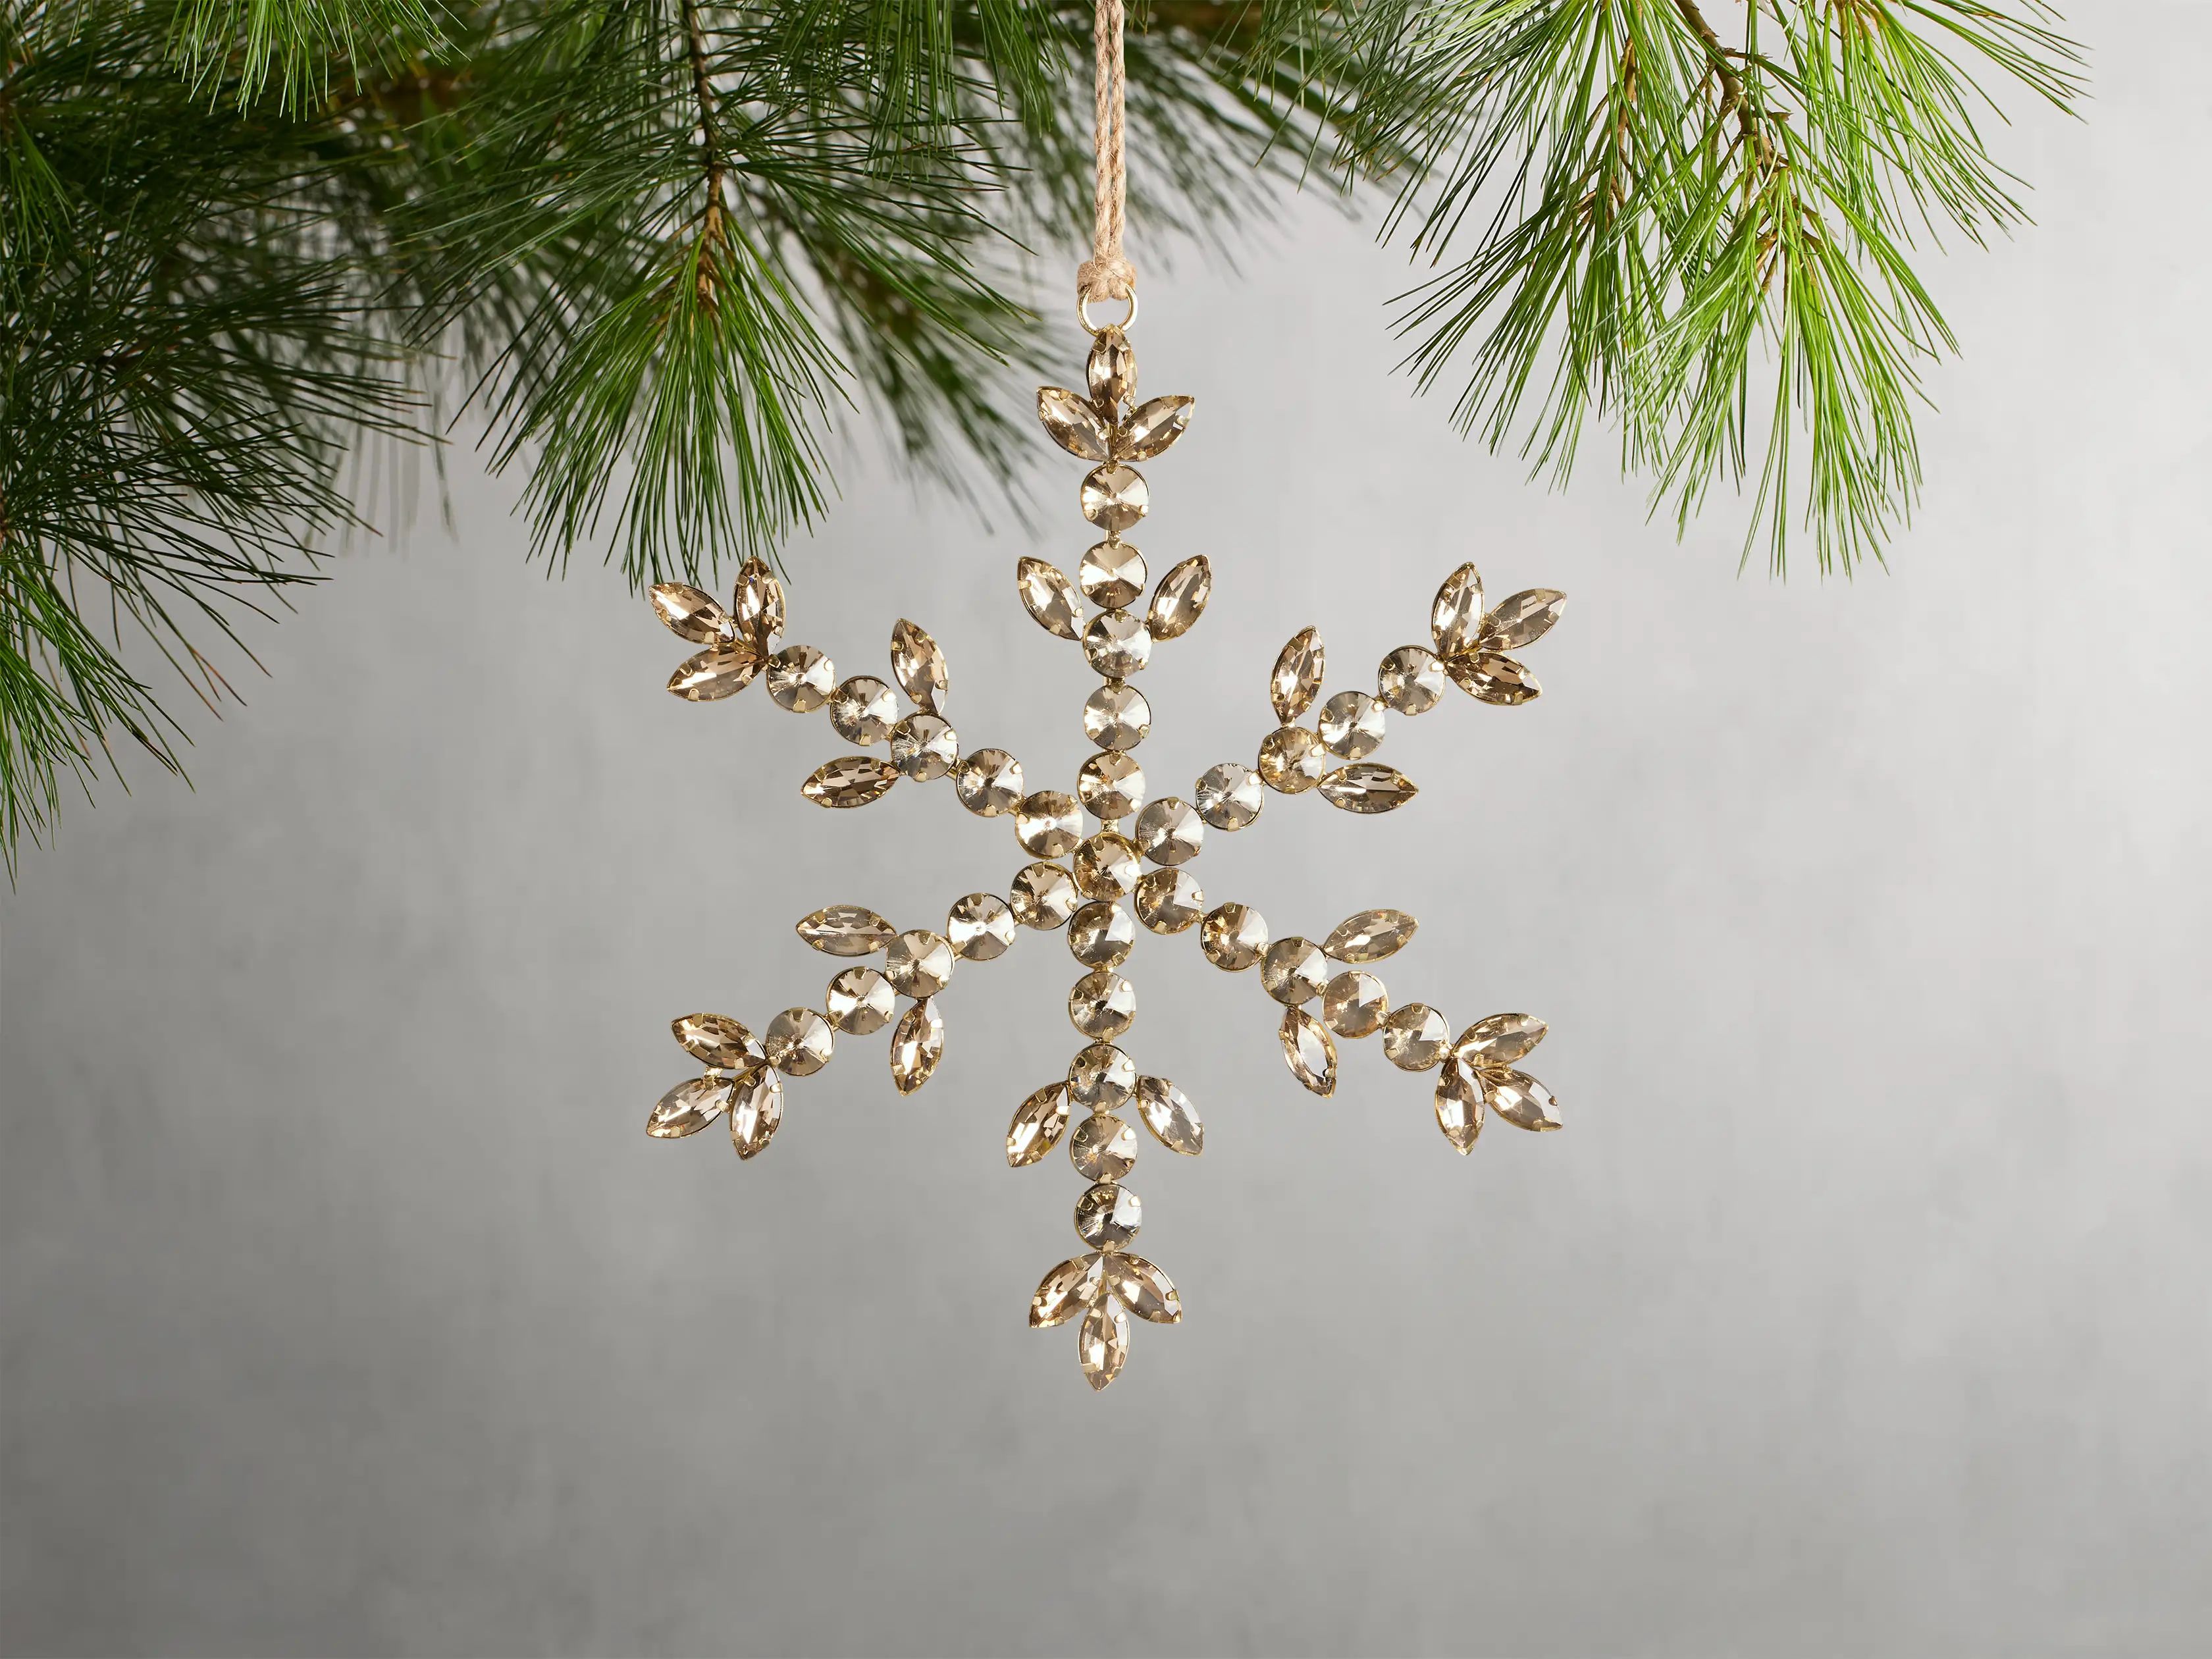 Crystal Snowflake Ornaments (Set of 4) | Arhaus